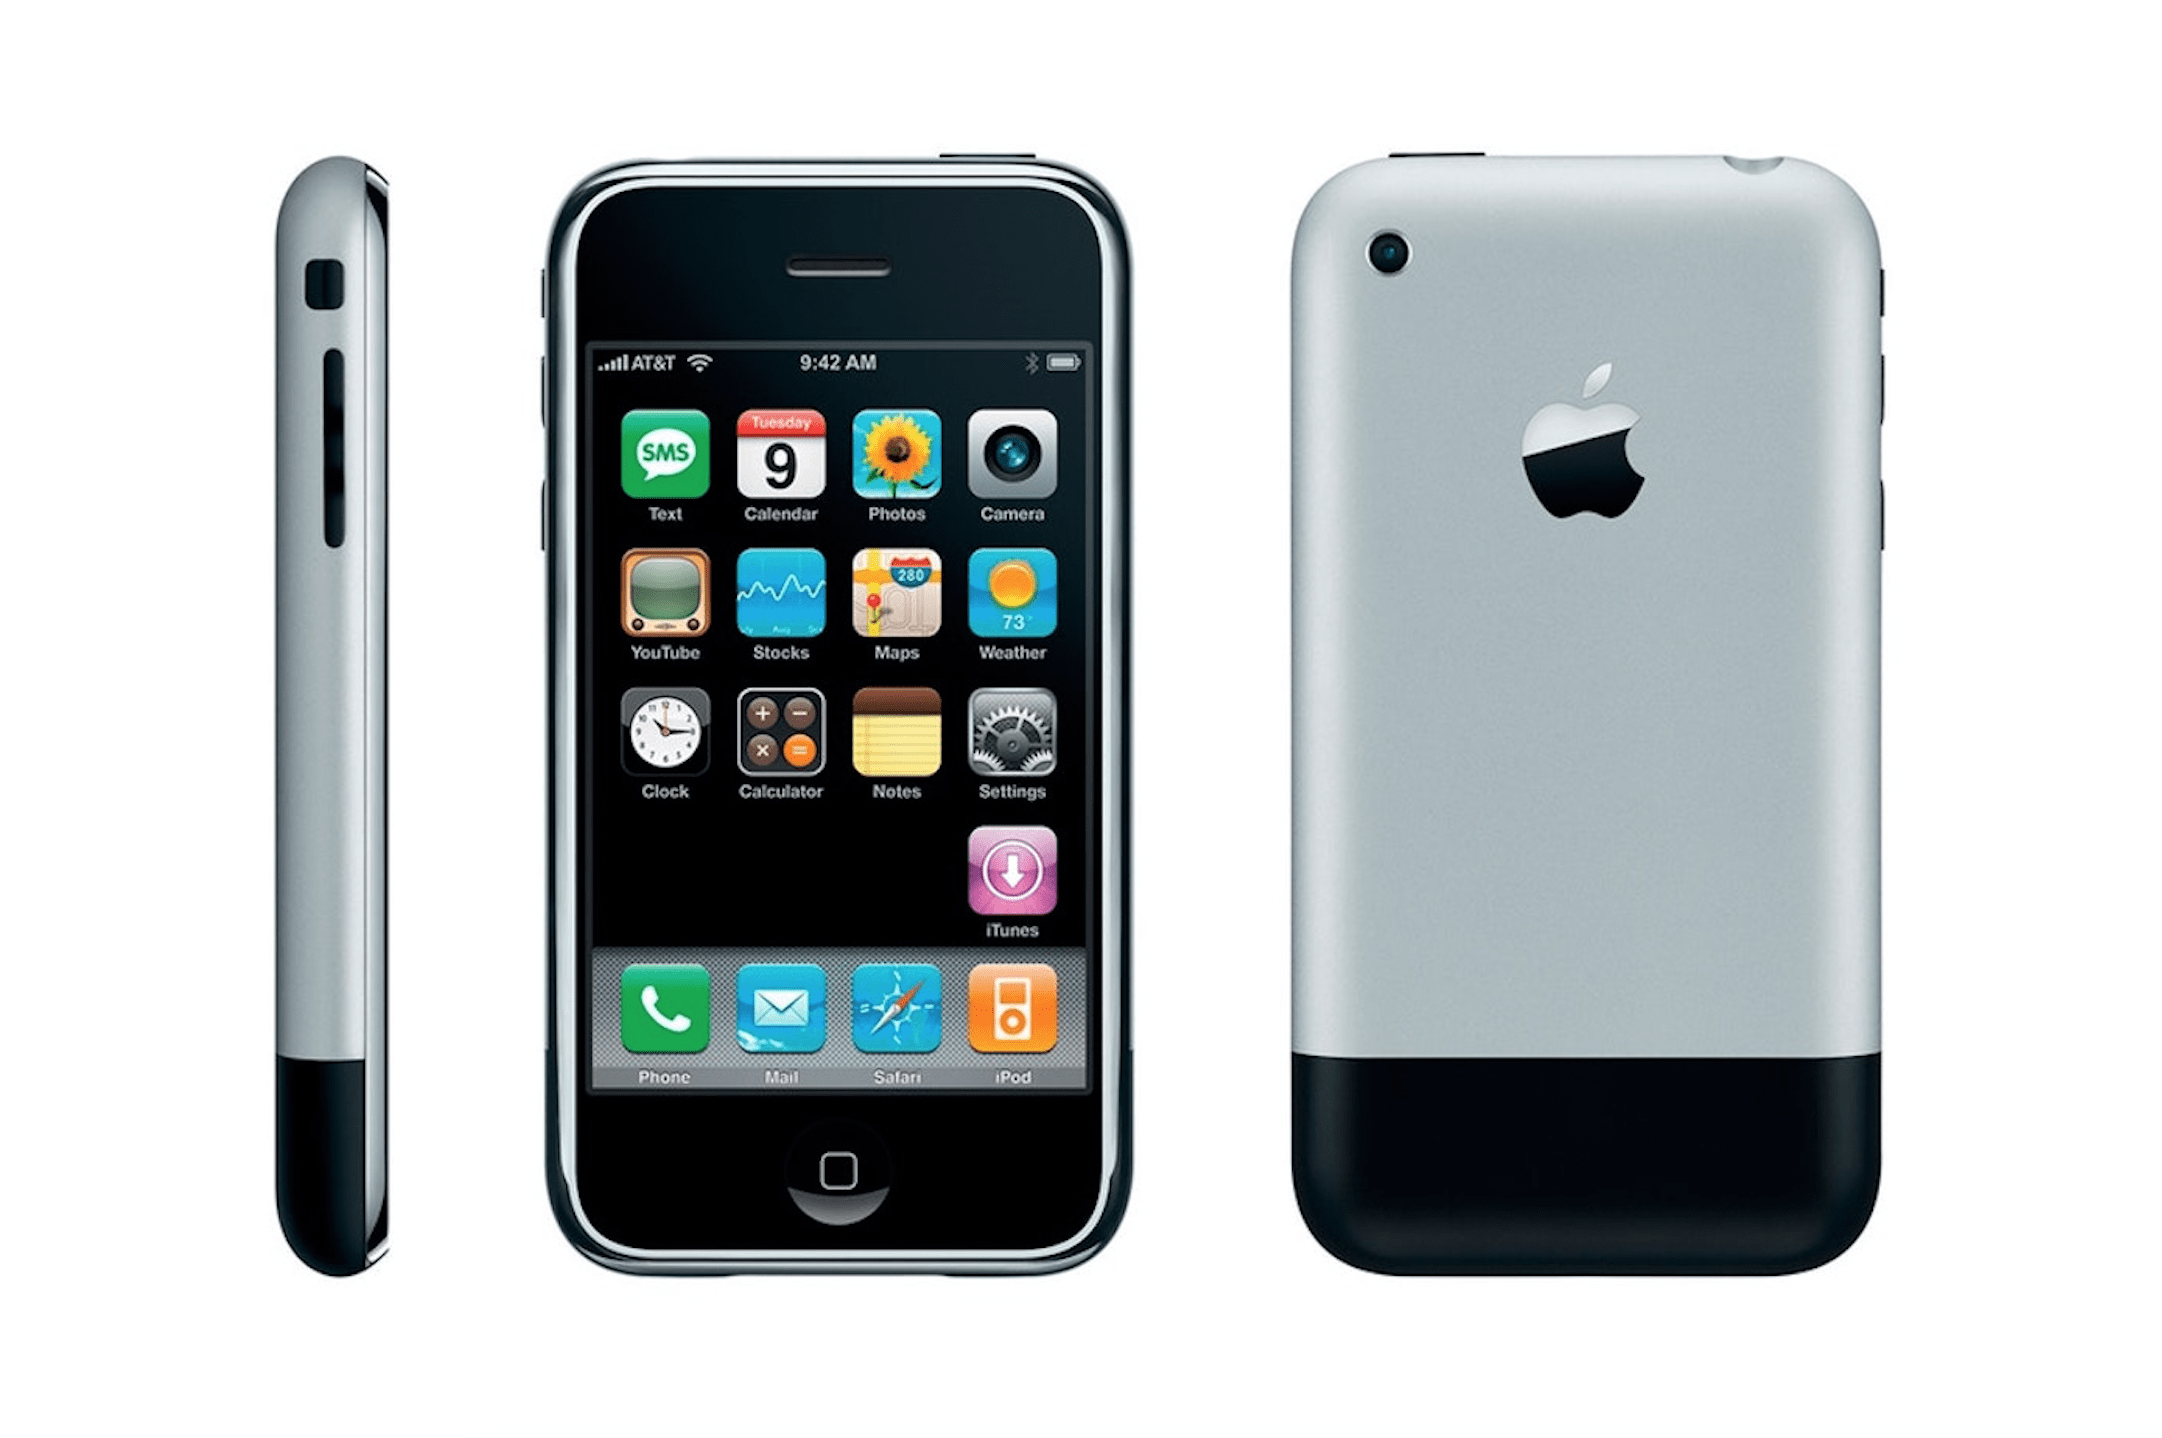 The Original iPhone